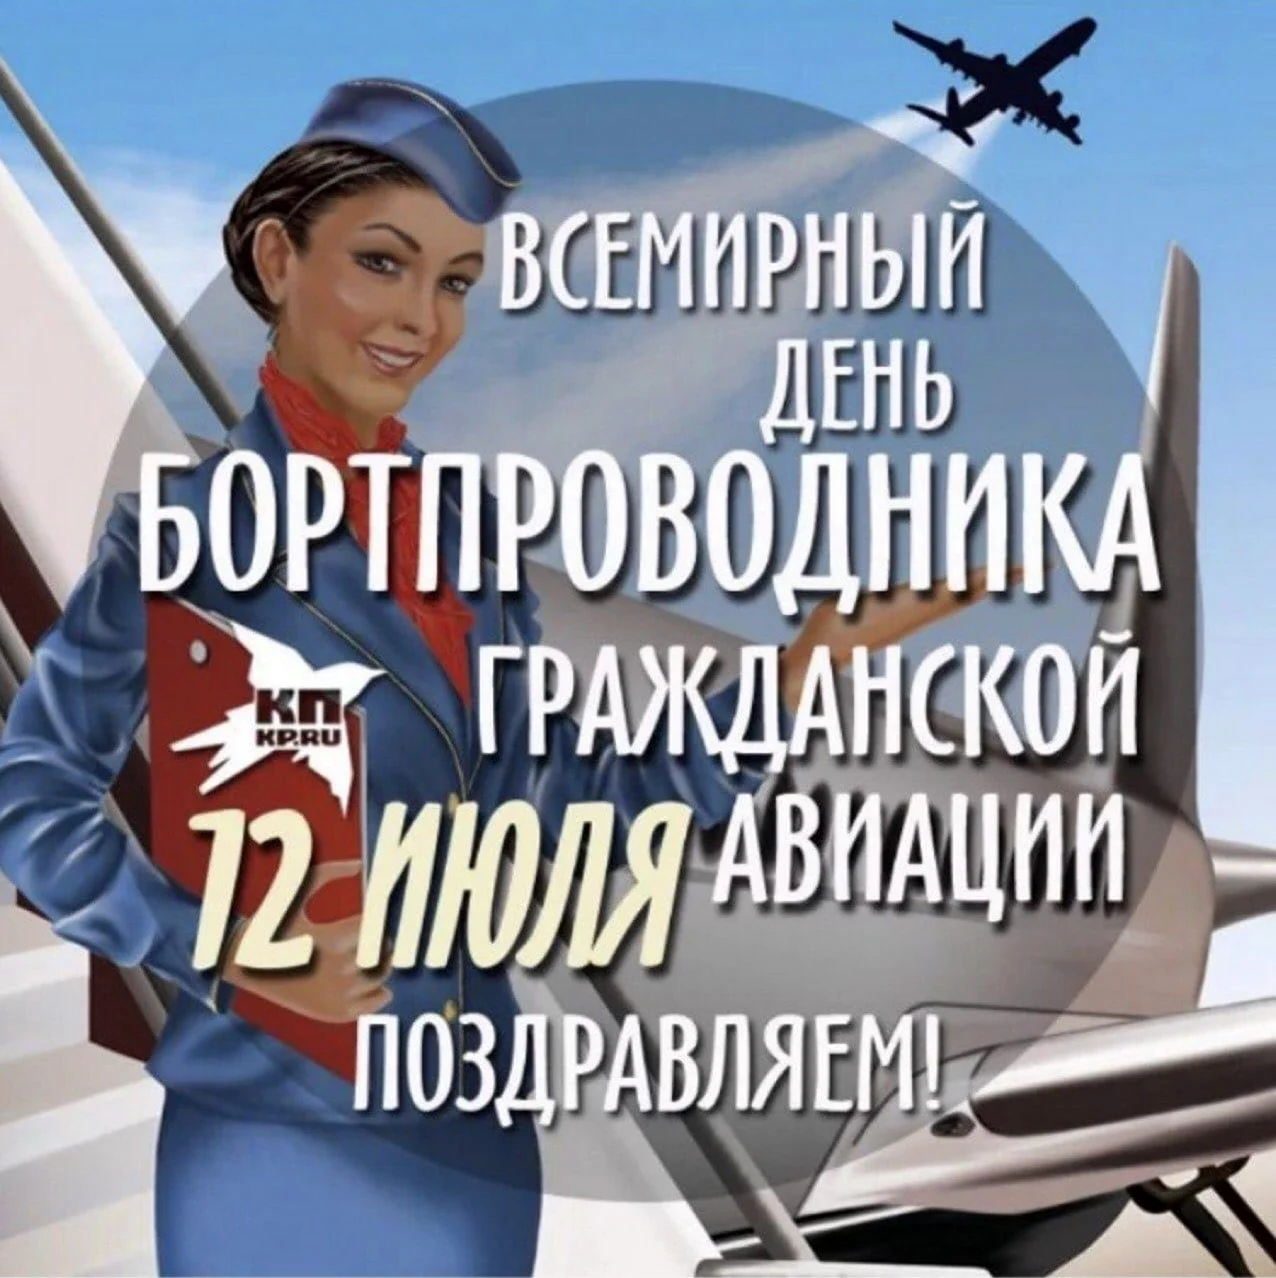 12 Июля Всемирный день бортпроводника гражданской авиации. Поздравление